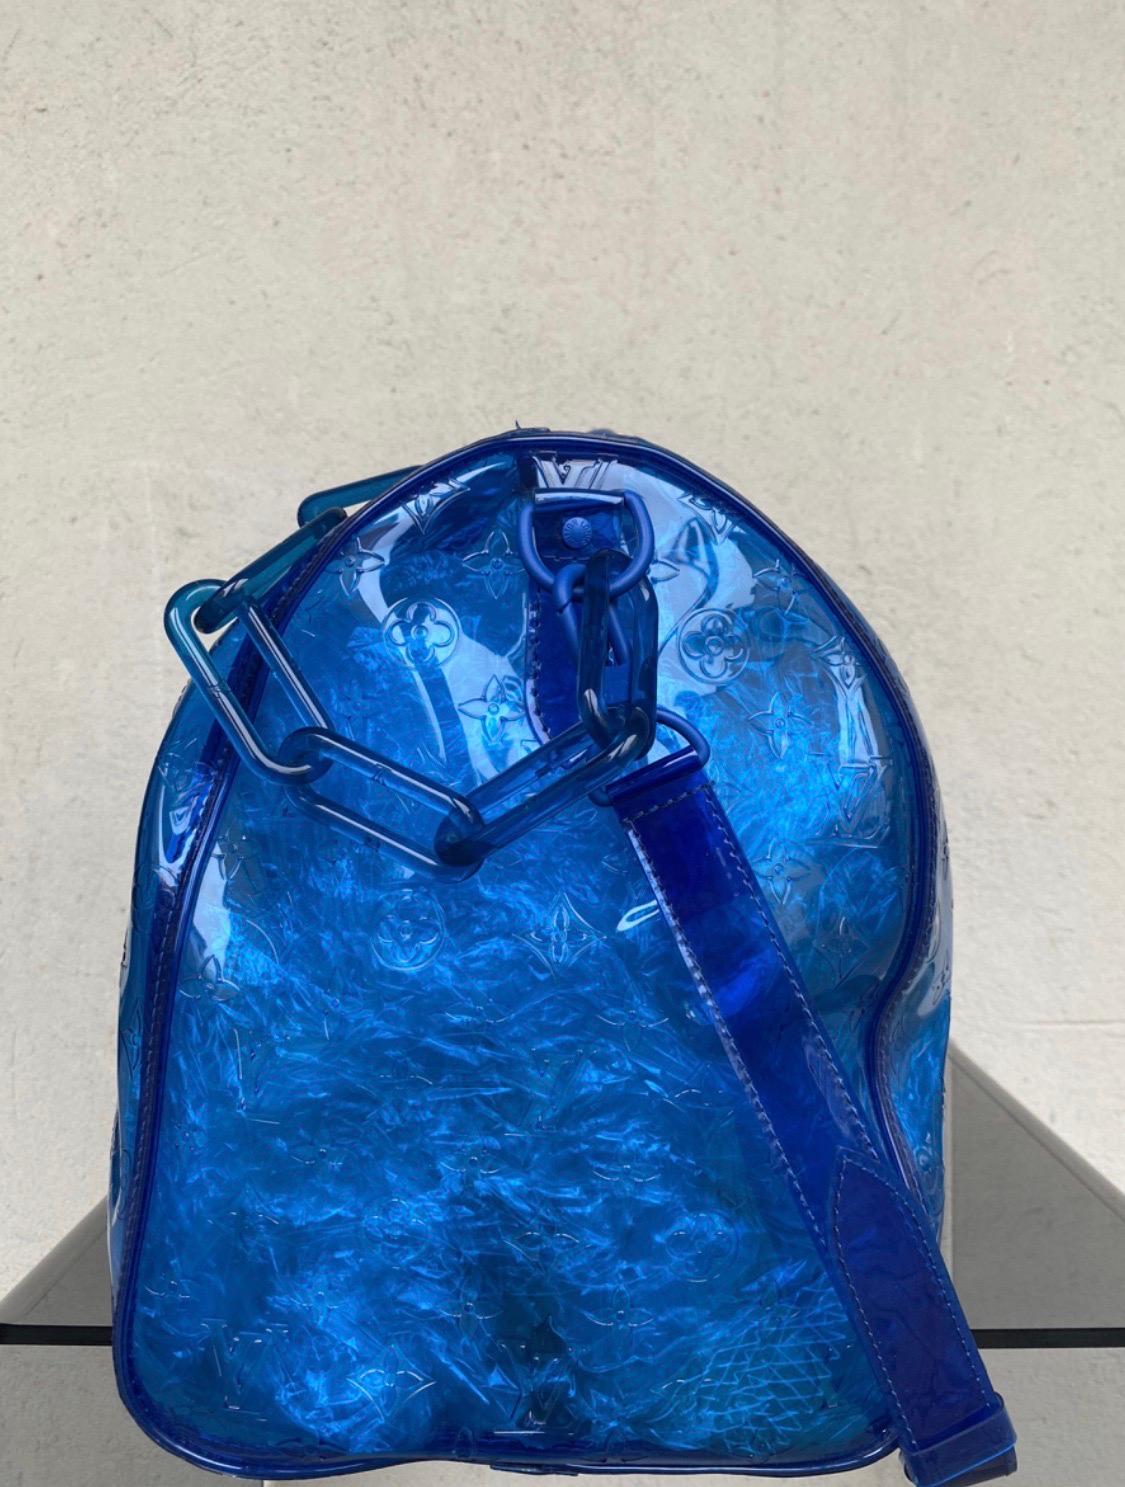 Louis Vuitton Keepall Bandoulière Monogramme 50  Bandoulière en pvc bleu Sac. Par Virgil Abloh.
Mesures :
Longueur 50 cm
Hauteur 29 cm 
Largeur 23 cm 
La bandoulière peut être allongée jusqu'à 52 cm.
Il est livré avec son cadenas d'origine.
Parfait